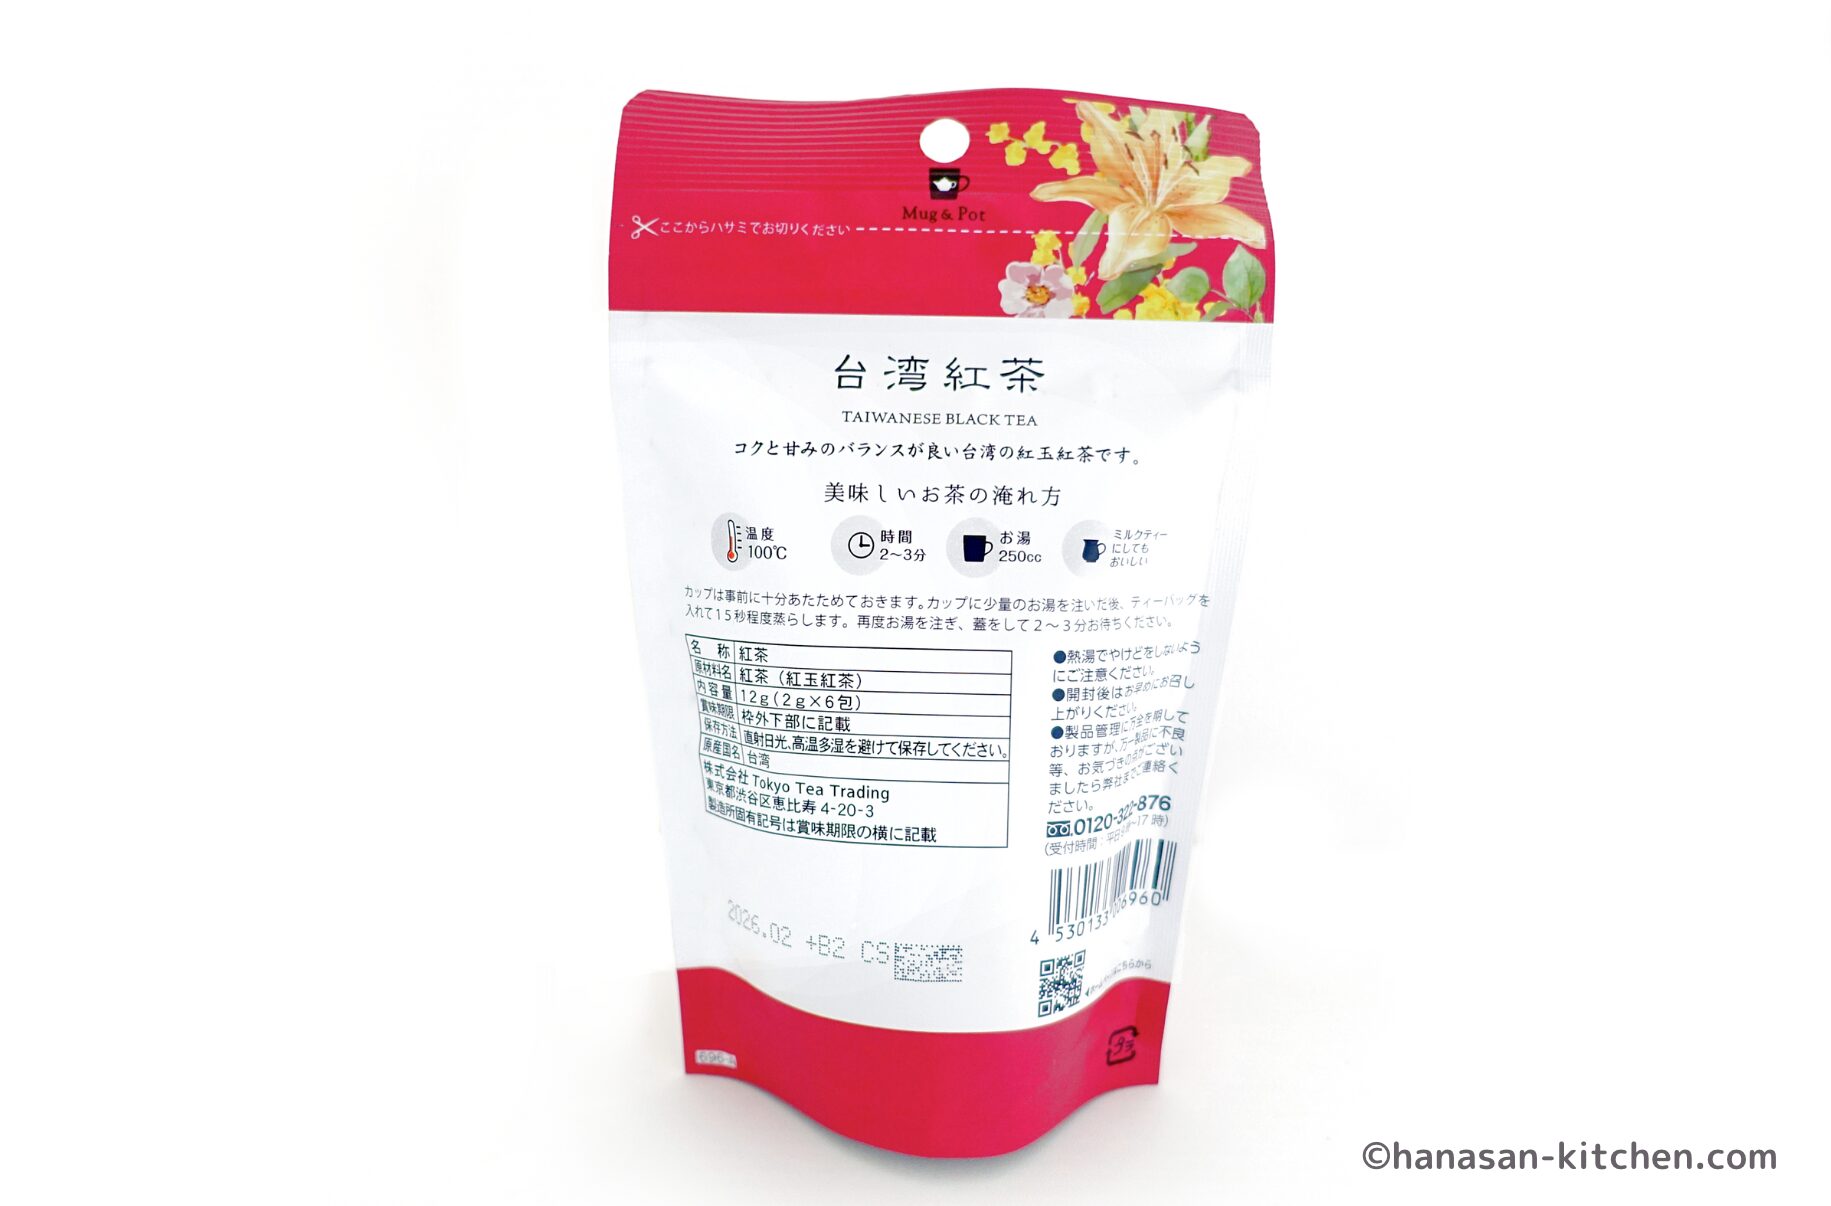 Mug＆Pot 台湾紅茶 12gのパッケージ(裏)